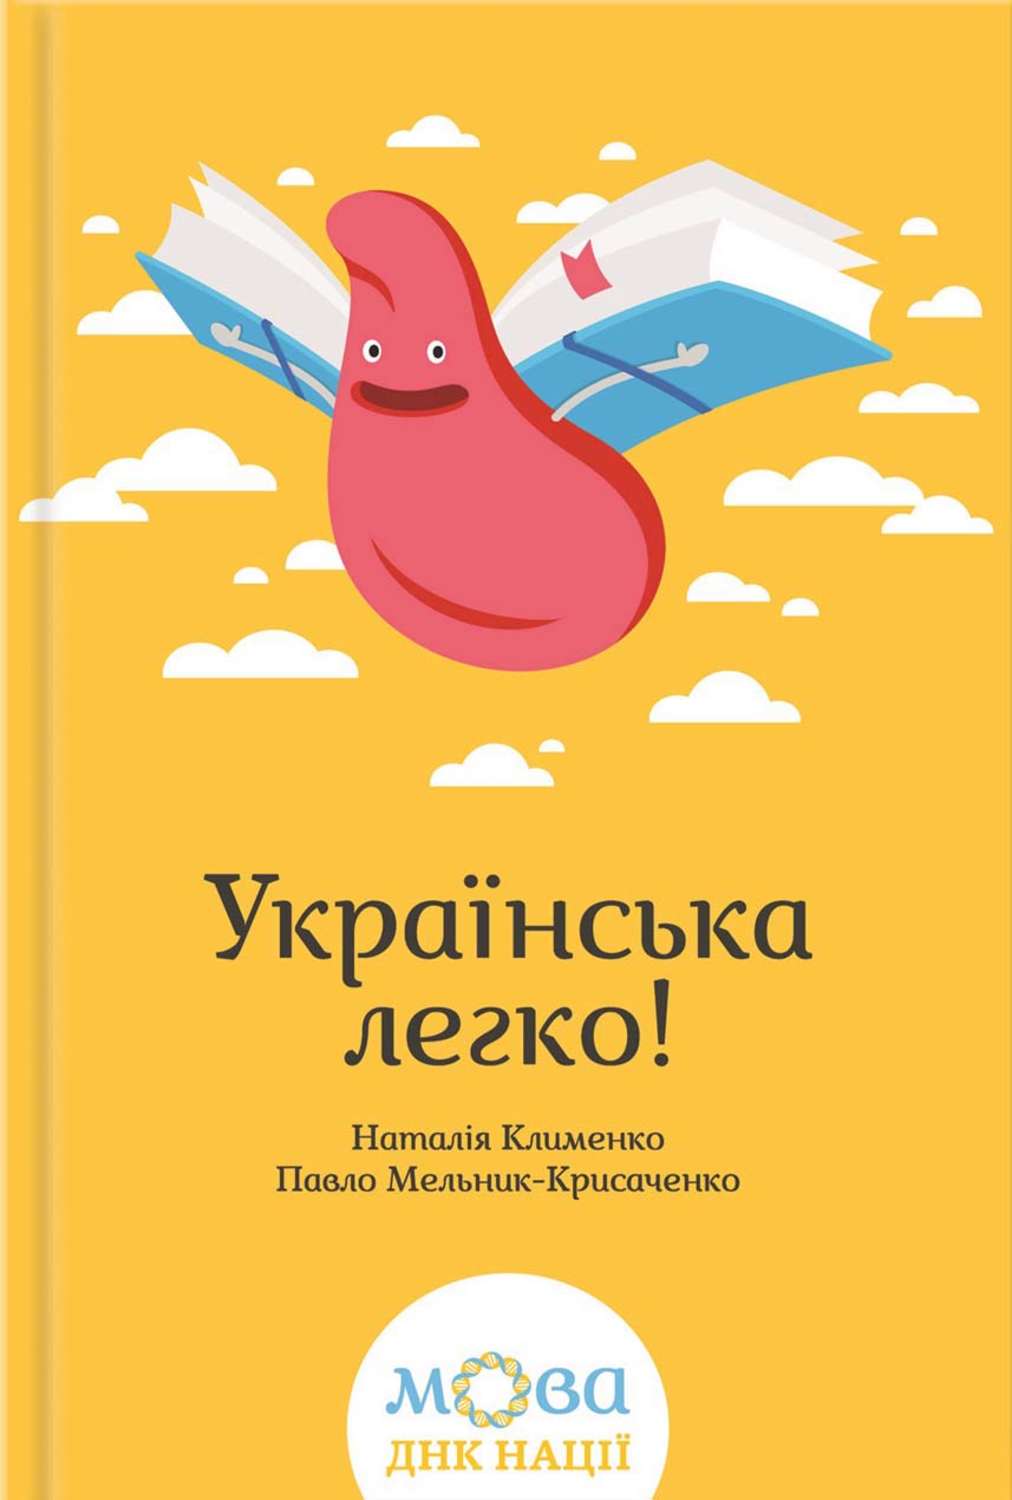 Клименко анна книги скачать бесплатно